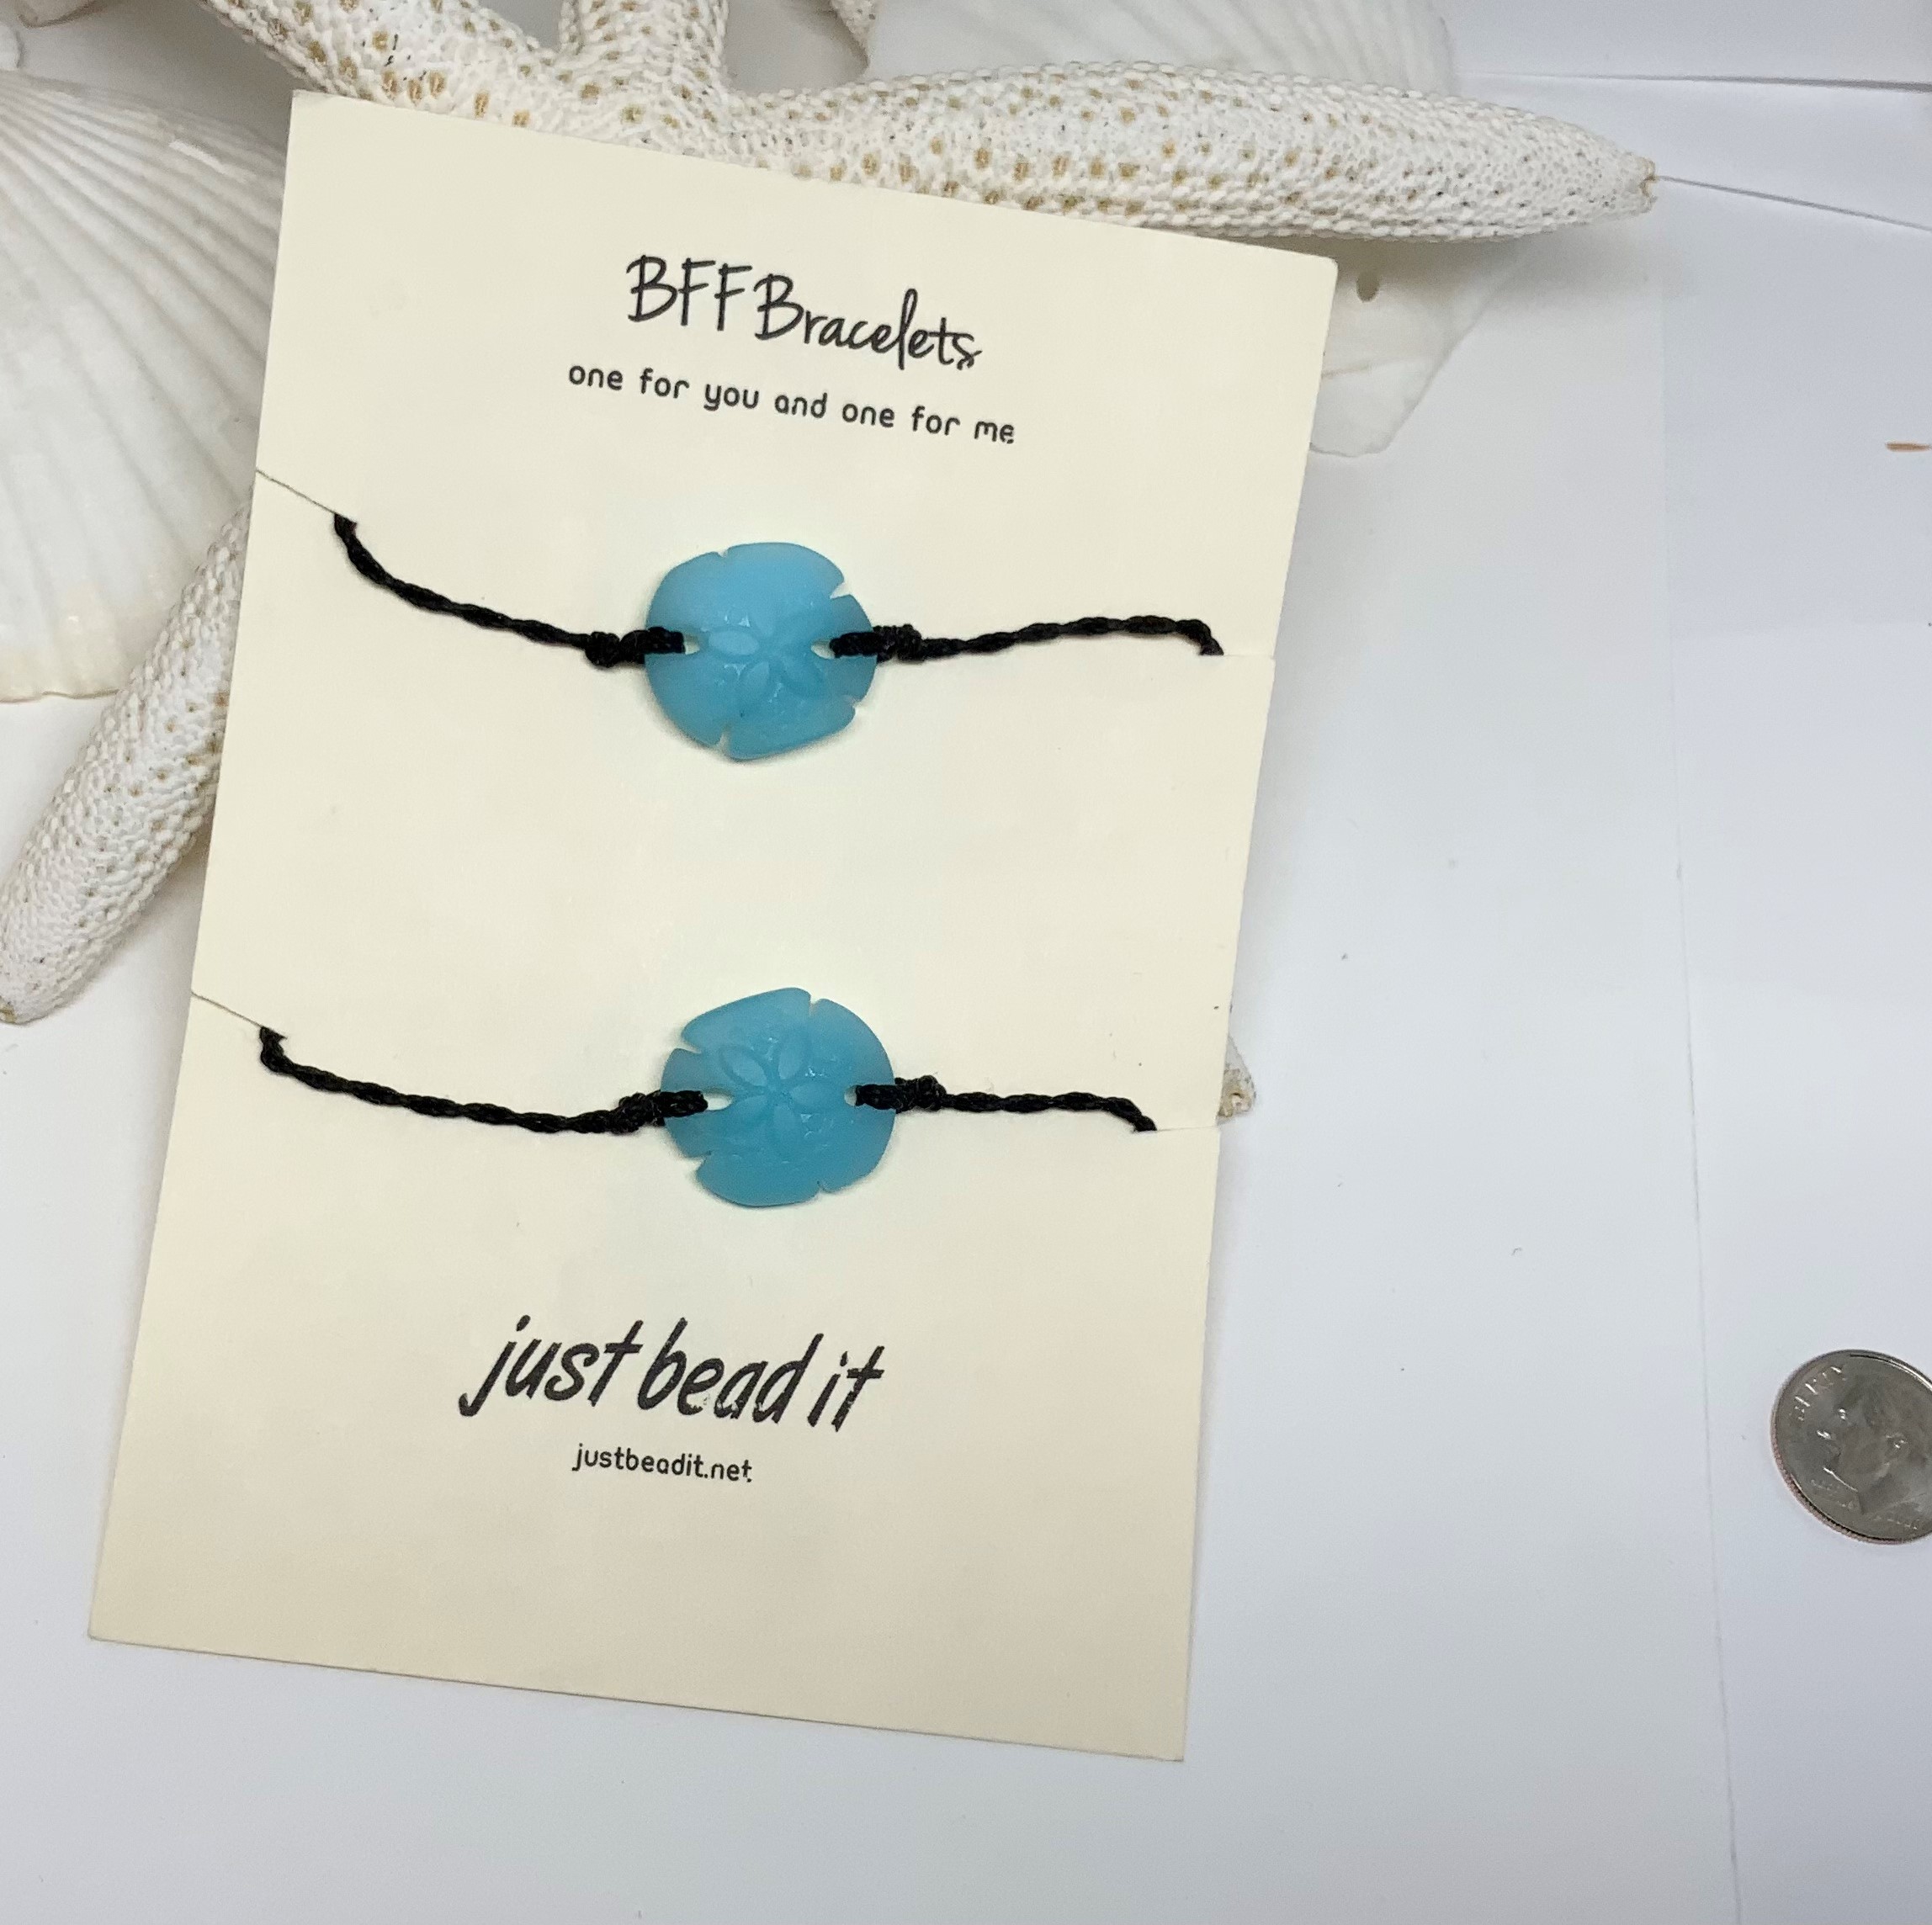 Best Friend Bracelets - 12 Pc. | Oriental Trading